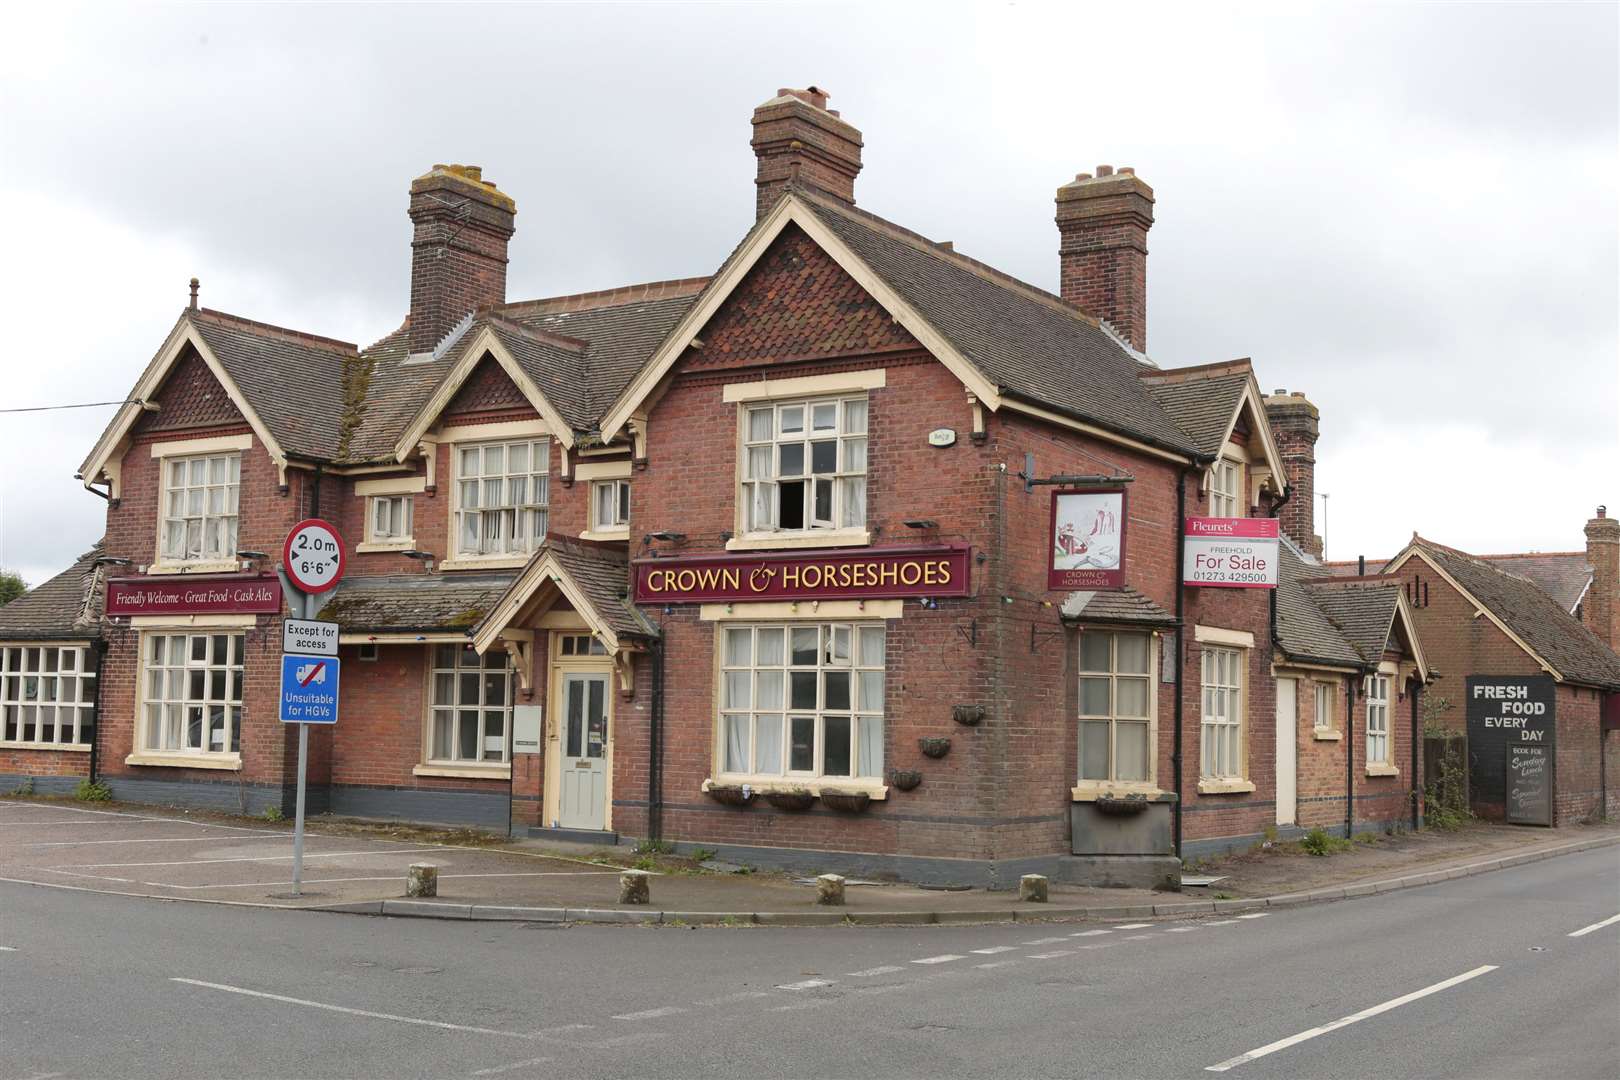 The disused pub